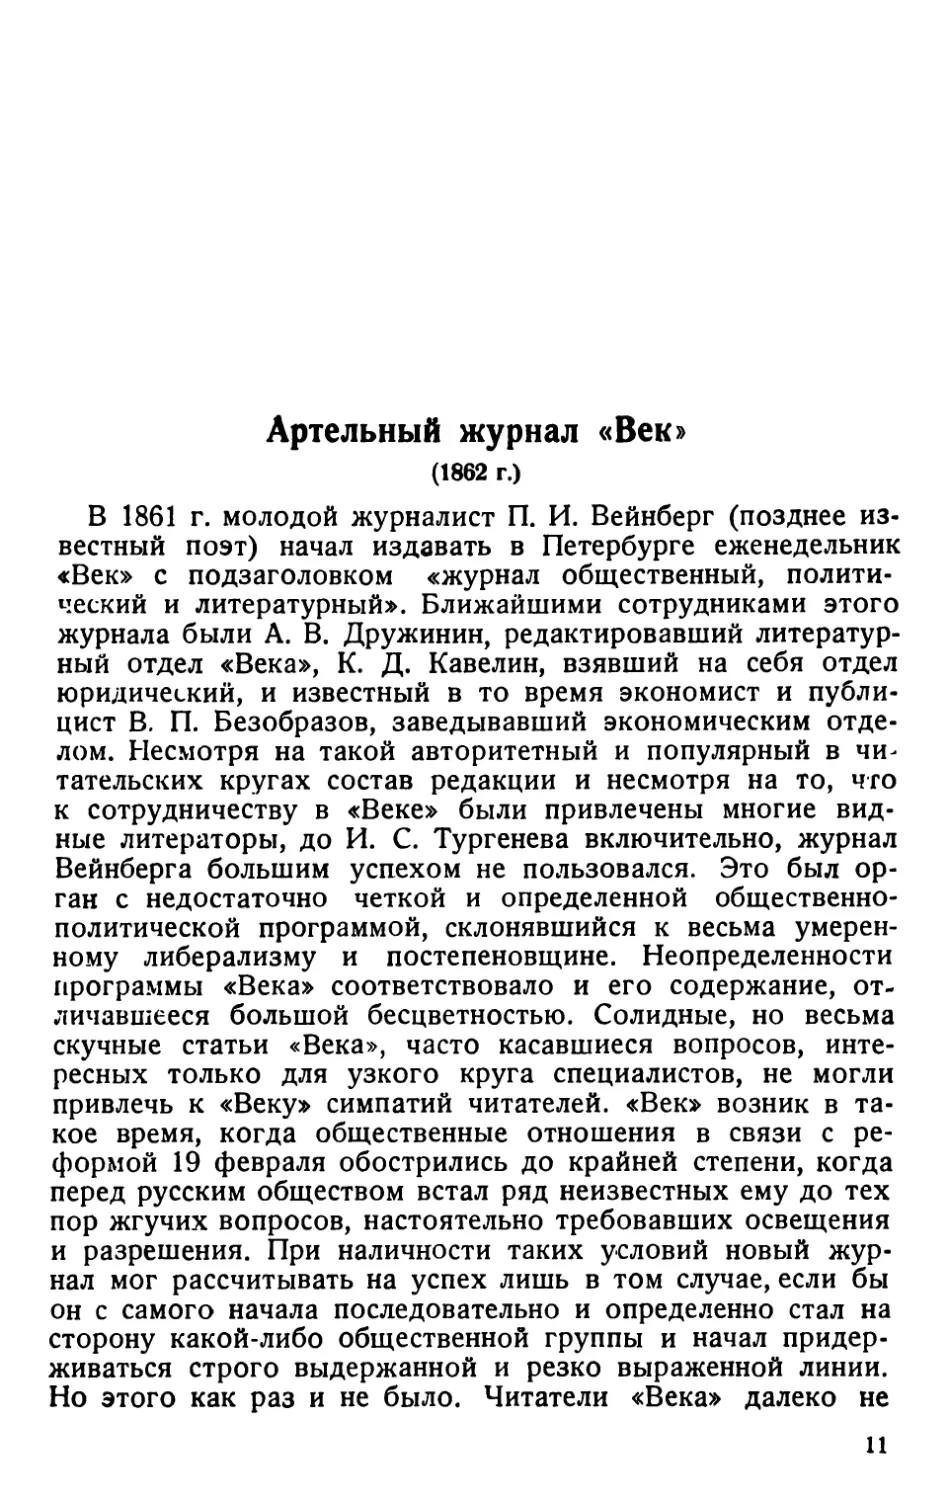 Артельный журнал „Век“ 1862 г.